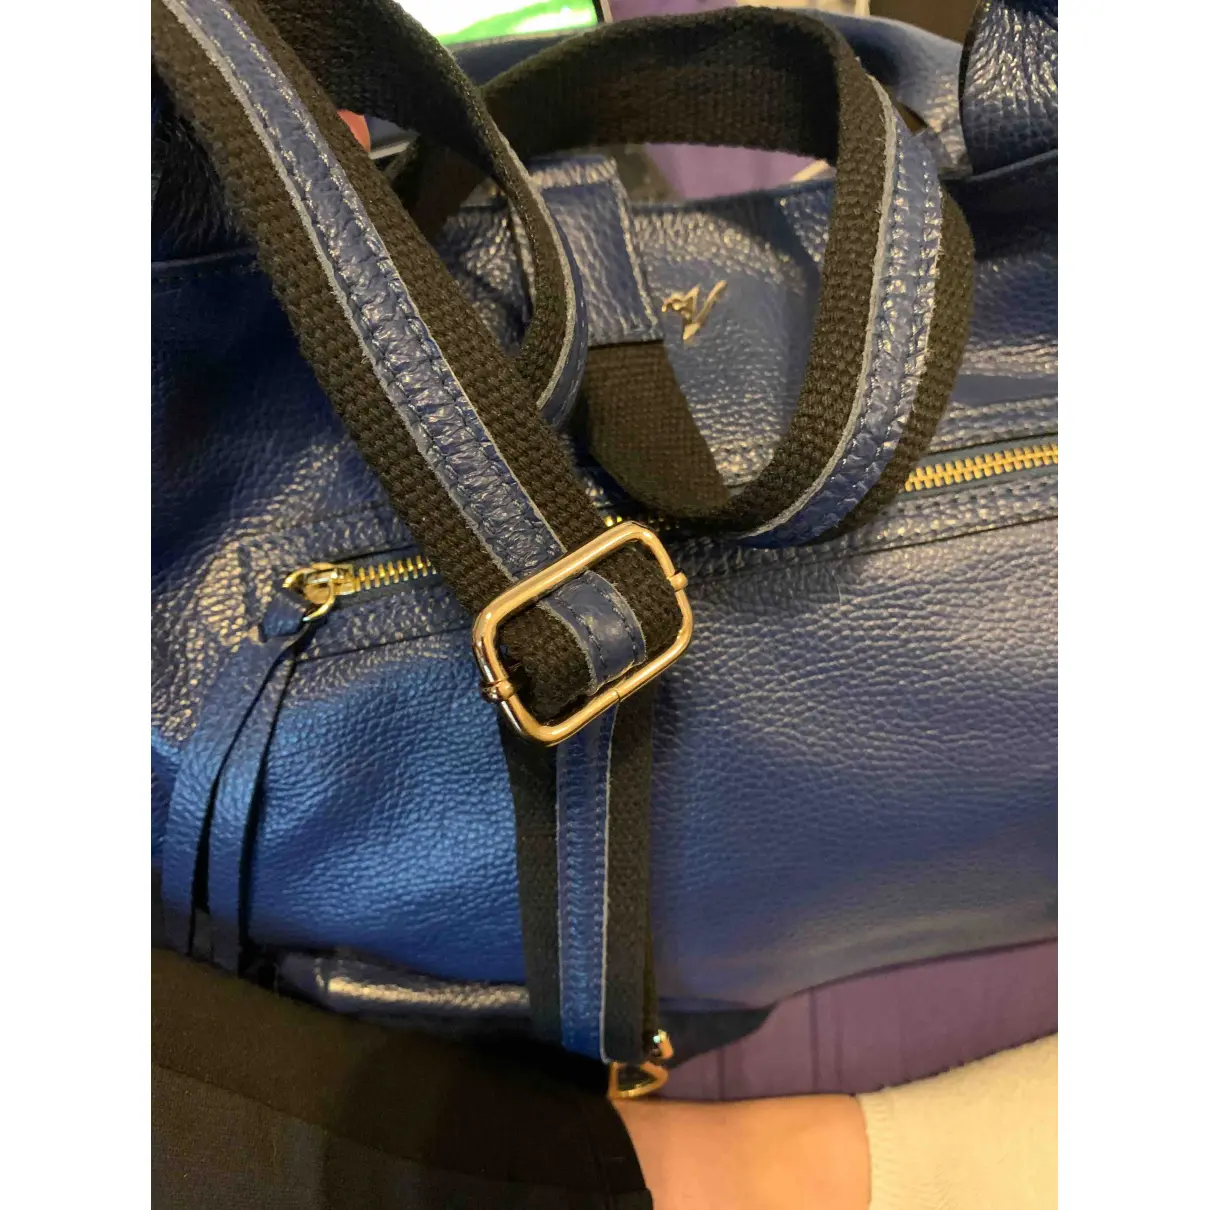 Leather handbag Mauro Volponi